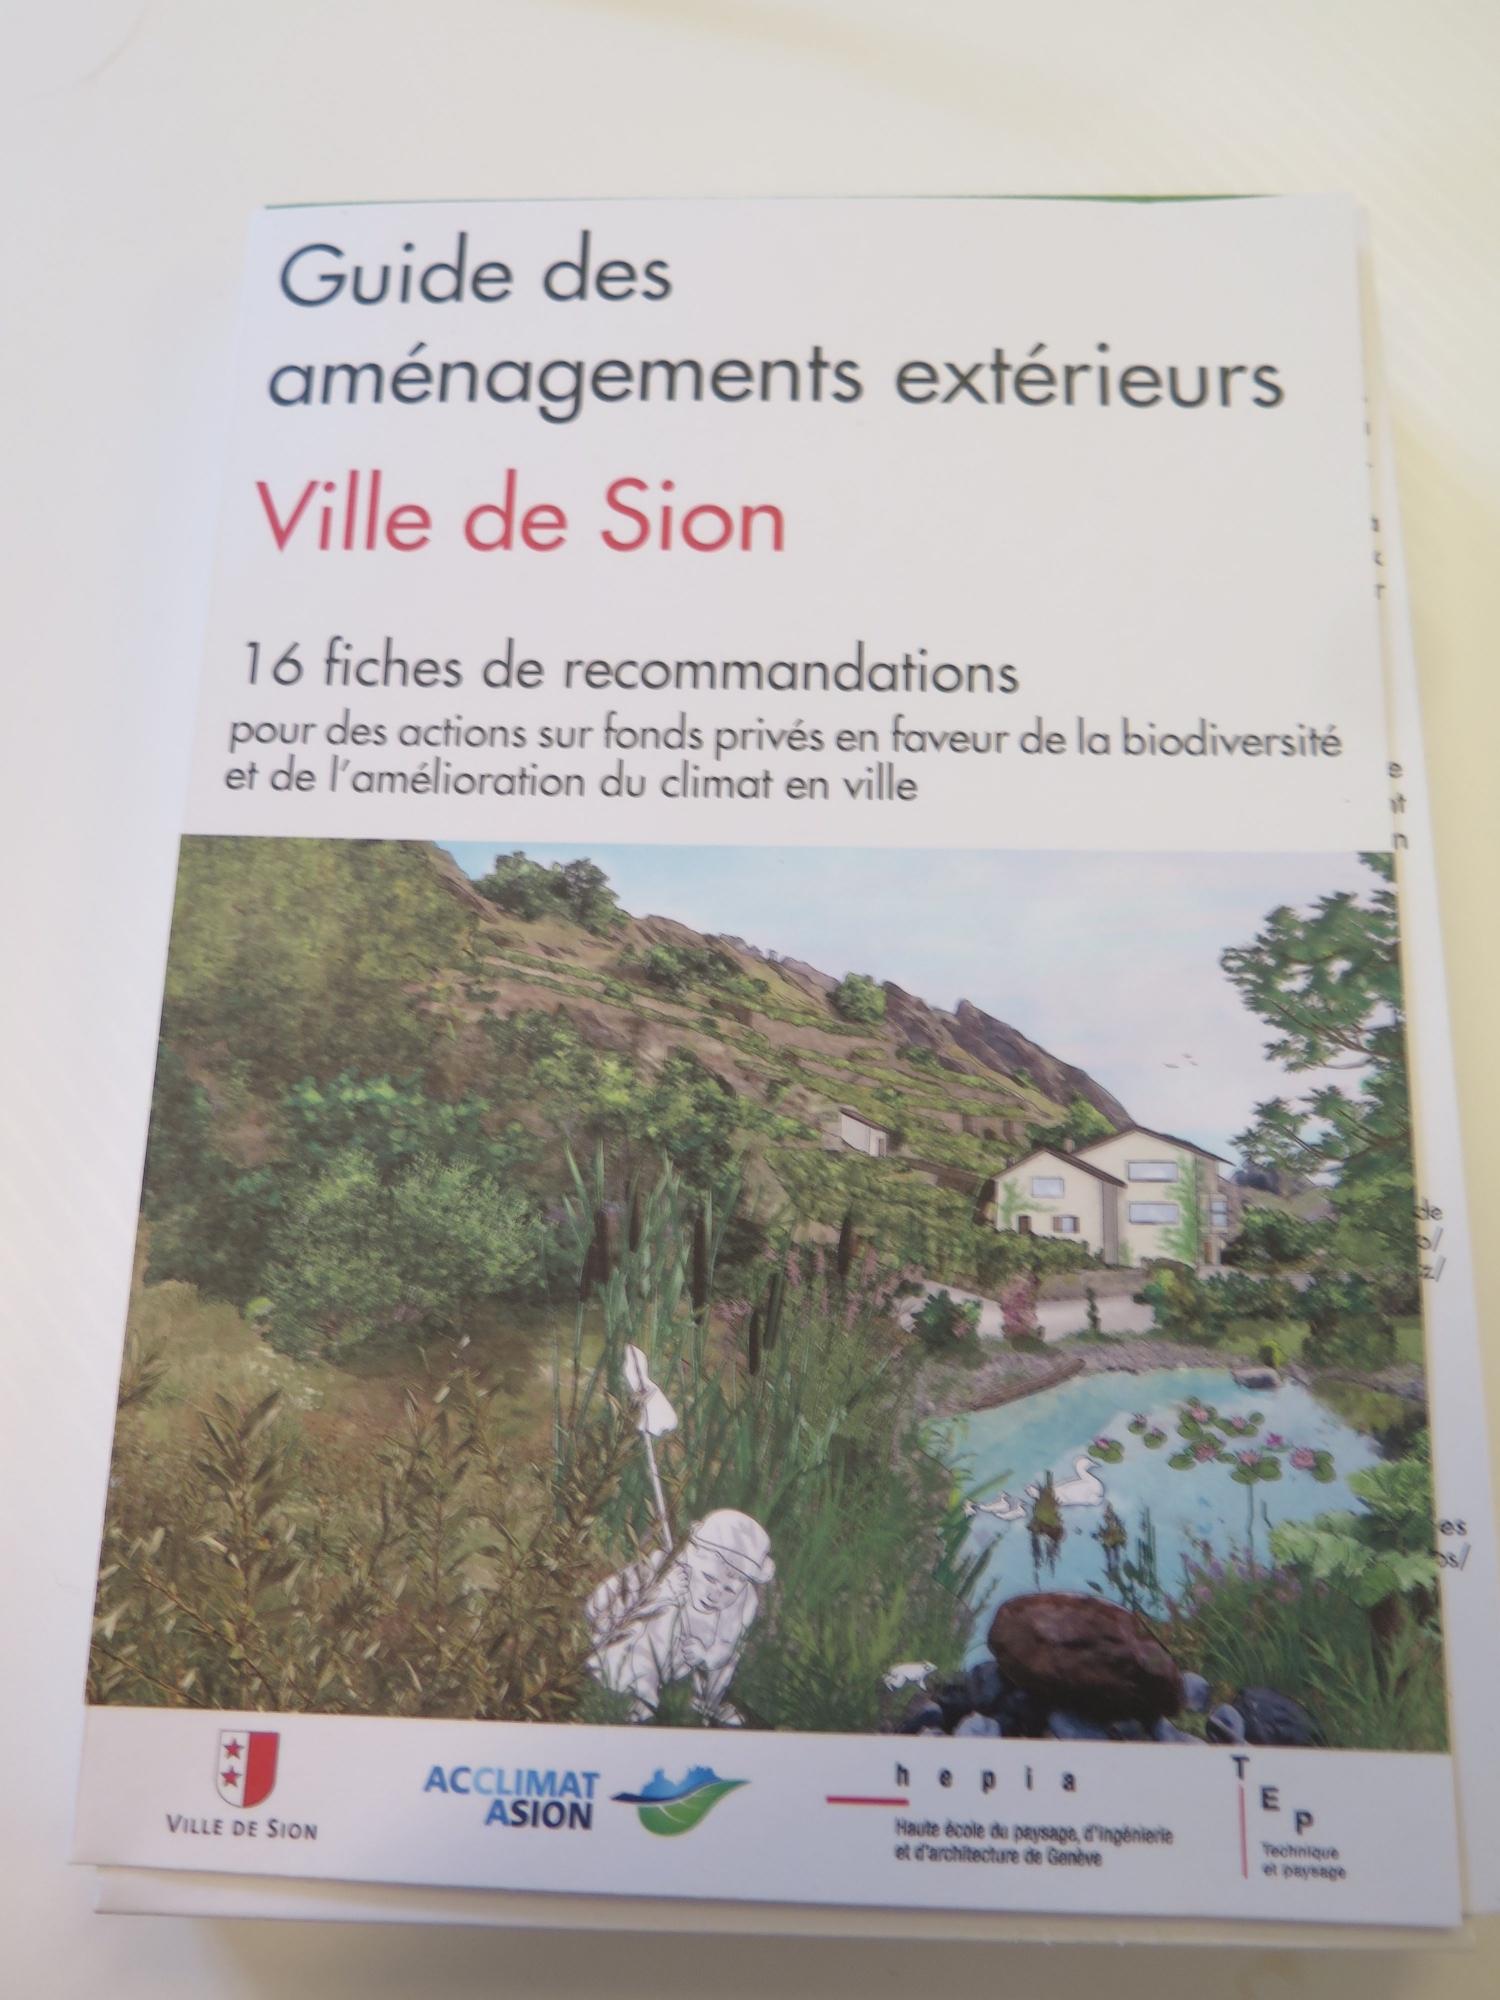 Un guide faisant la promotion des aménagements extérieurs en milieu urbain a été édité par la ville de Sion.